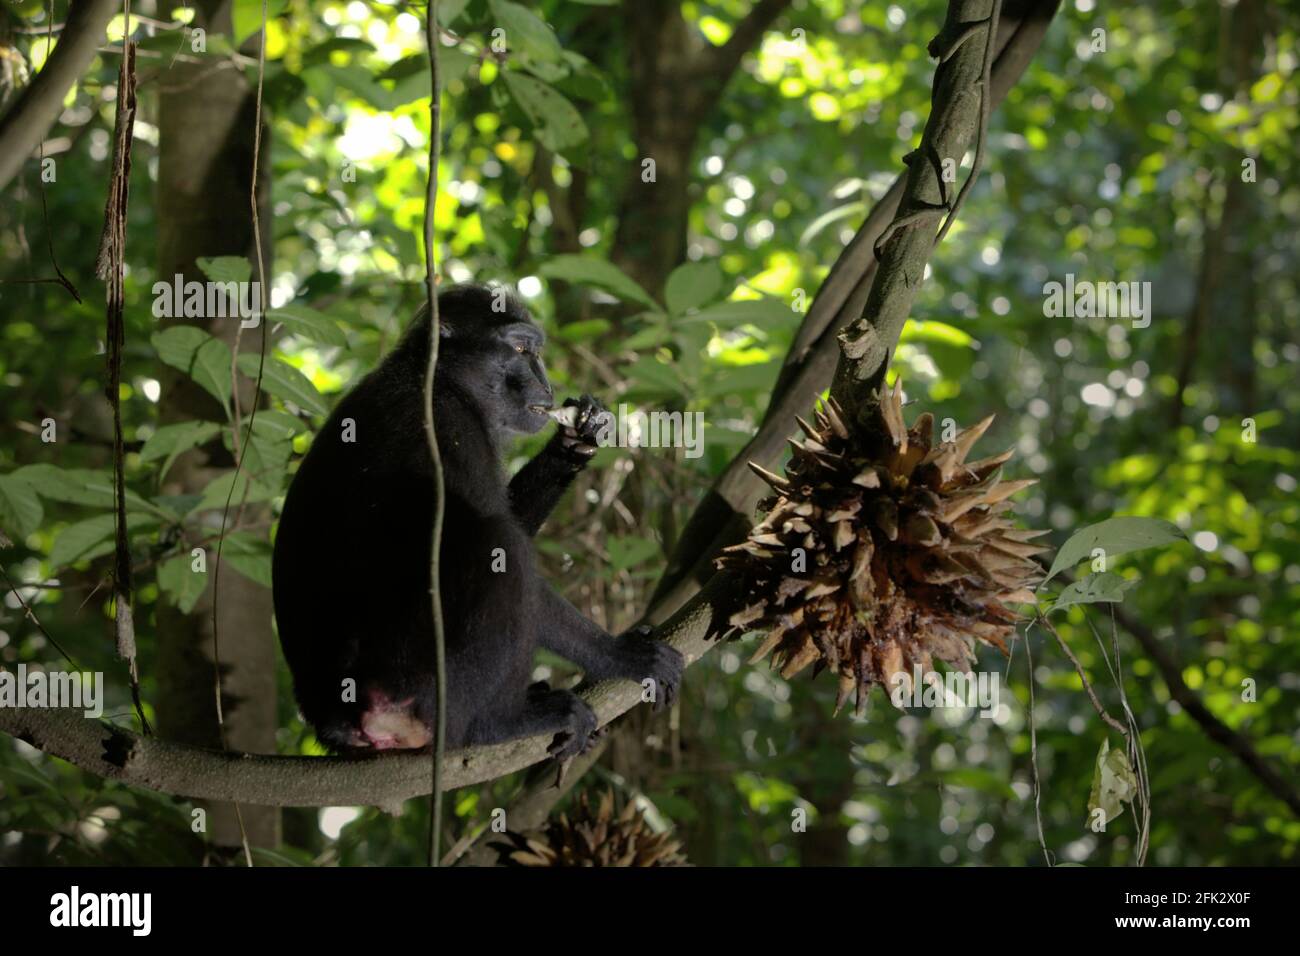 Macaco crestato mangiare frutta liana nella foresta. Piantare alberi da frutto nella zona tra foresta e paesaggio agricolo contribuirebbe a ridurre i conflitti uomo-scimmia, secondo Reyni Palohoen, coordinatore di progetto di Selamatkan Yaki (Save Yaki) all'inizio di questo mese, rispondendo all'invasione di scimmie di terreni agricoli nella reggenza del Minahasa meridionale, Sulawesi settentrionale, Indonesia. Foto Stock